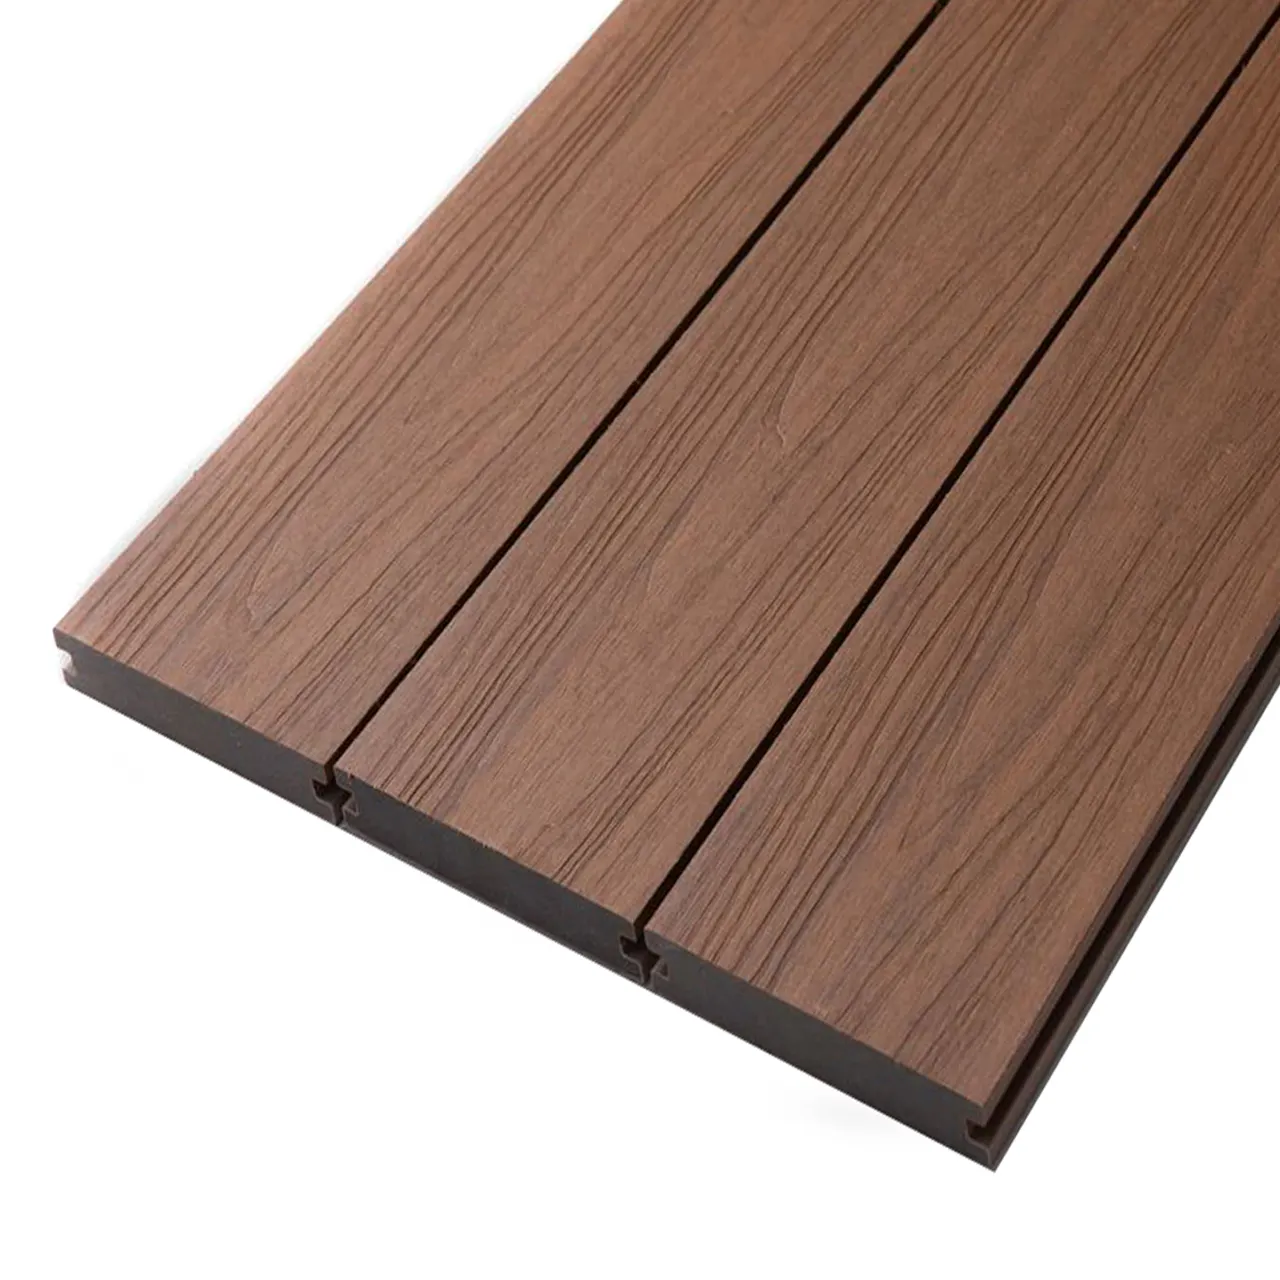 Outdoor Faux Wood Recycled Plastic Solid Lumber Composite Wpc Decking Alternative Outdoor Flooring Garden Floor Deck